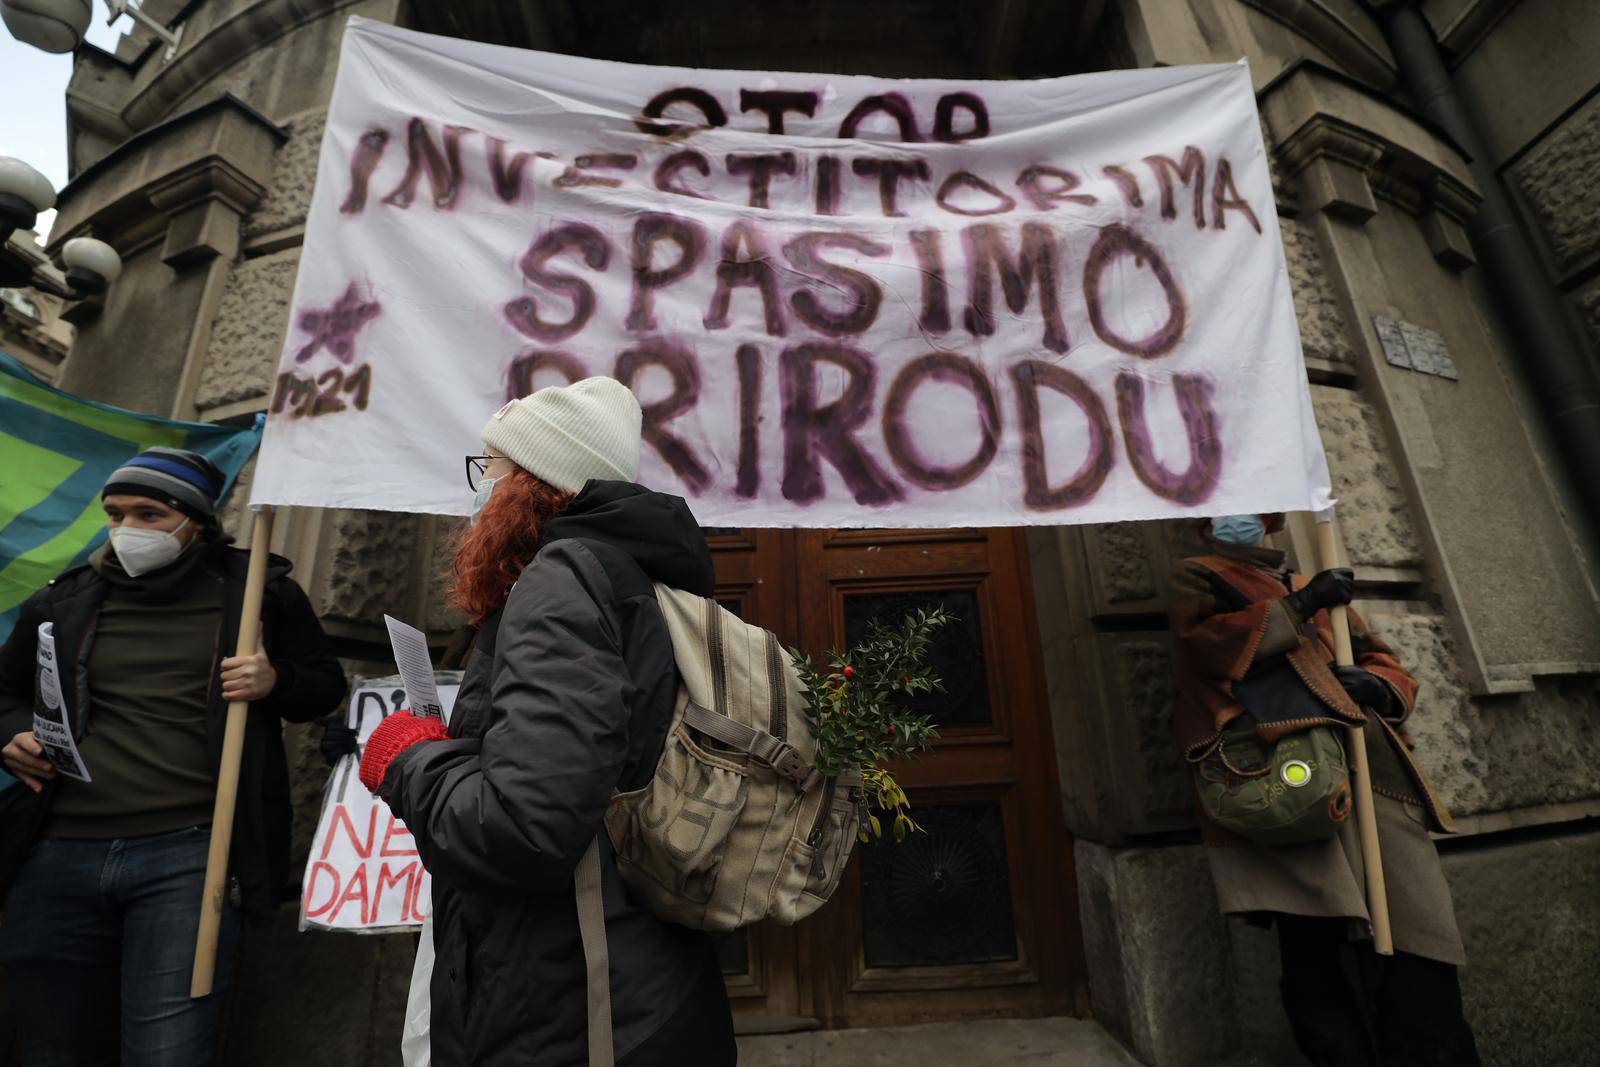 Beograd: Građani prosvjeduju ispred sjedišta Vlade protiv kompanije Rio Tinto čije bi posljedice mogle dovesti do zagađenja